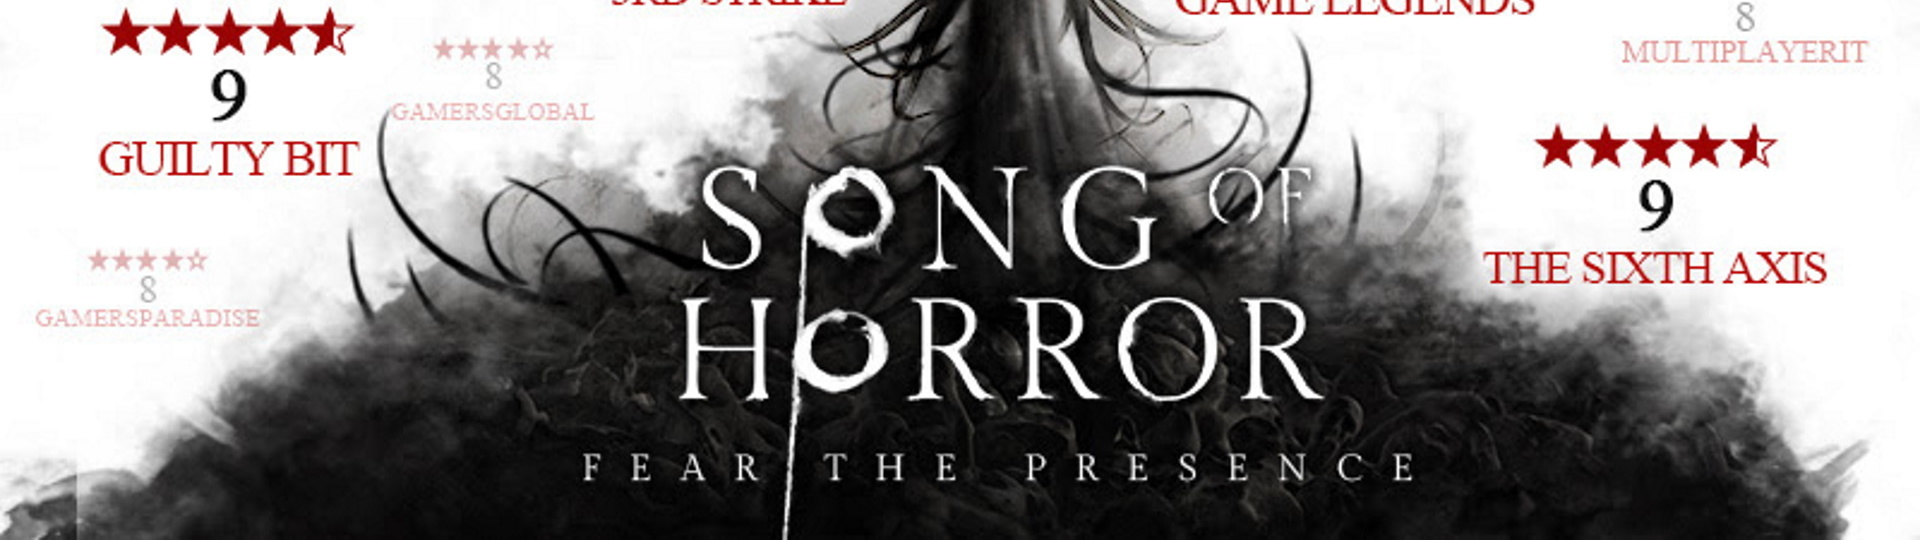 Song of Horror odložen až na začátek 2021 | Novinky